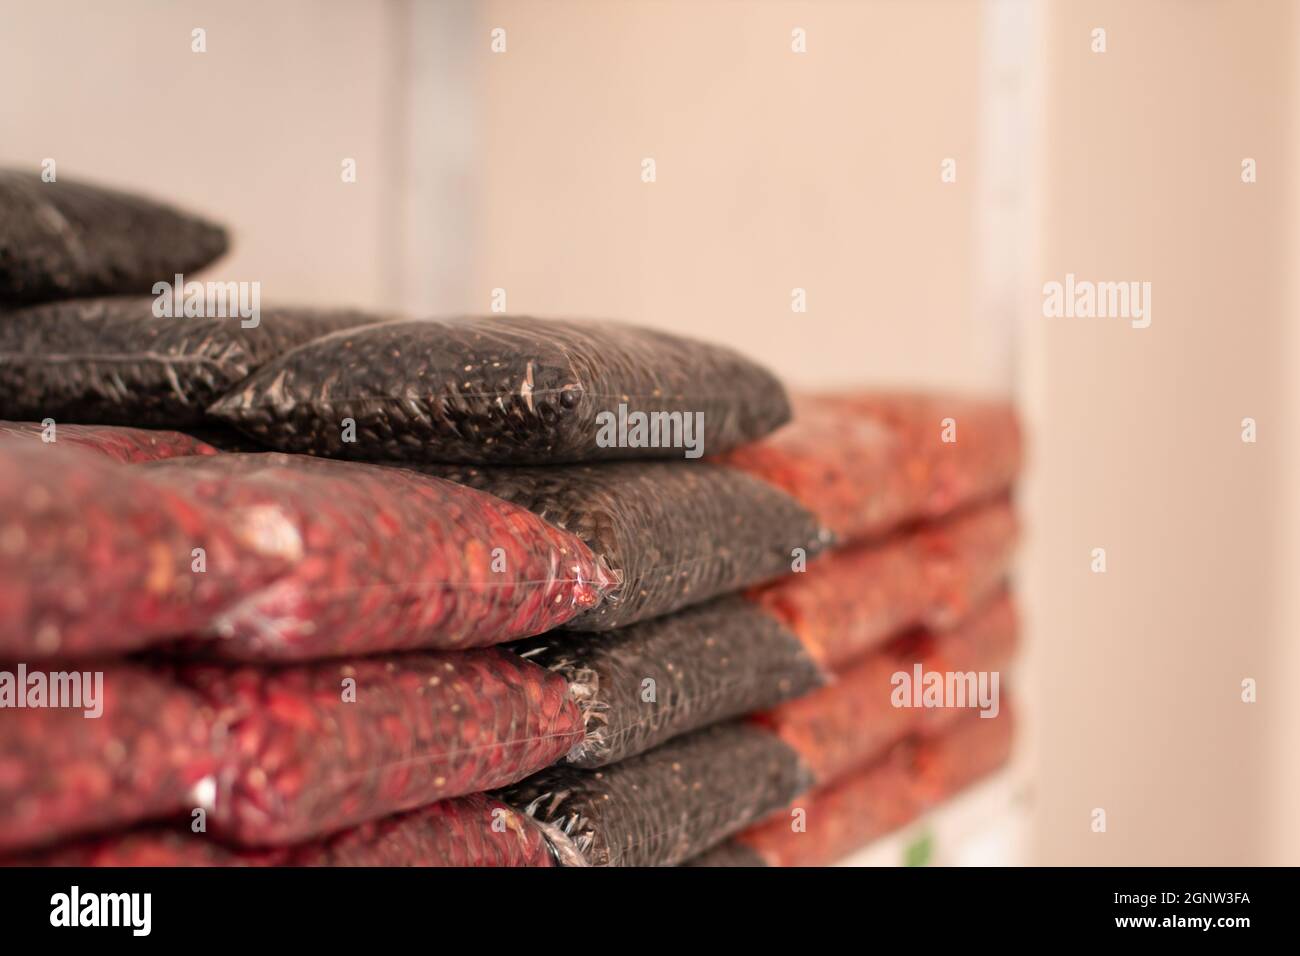 Frijoles apilados en bolsas transparentes. Tienda de granos latina. Tienda natural. Stock Photo